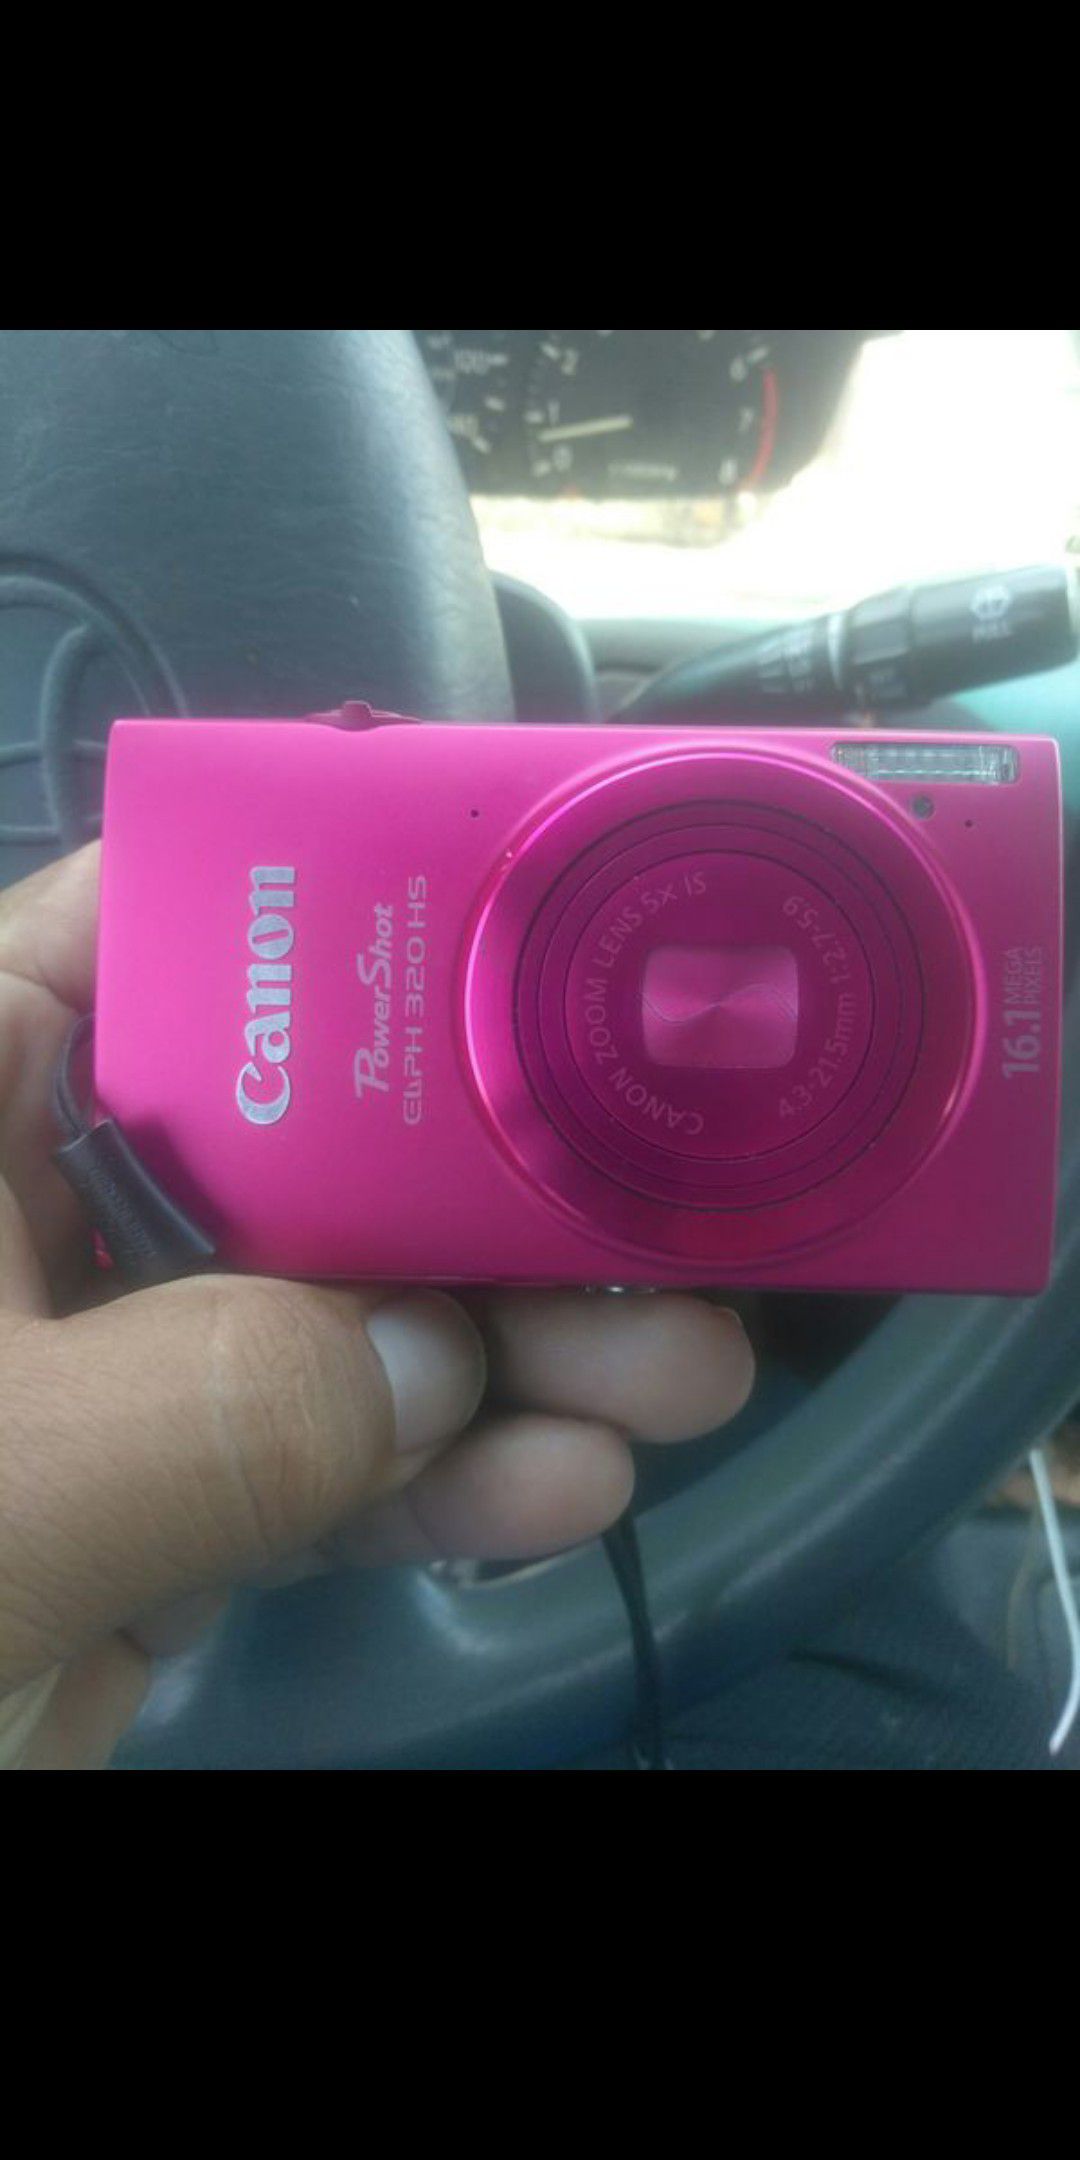 Canon digital camera